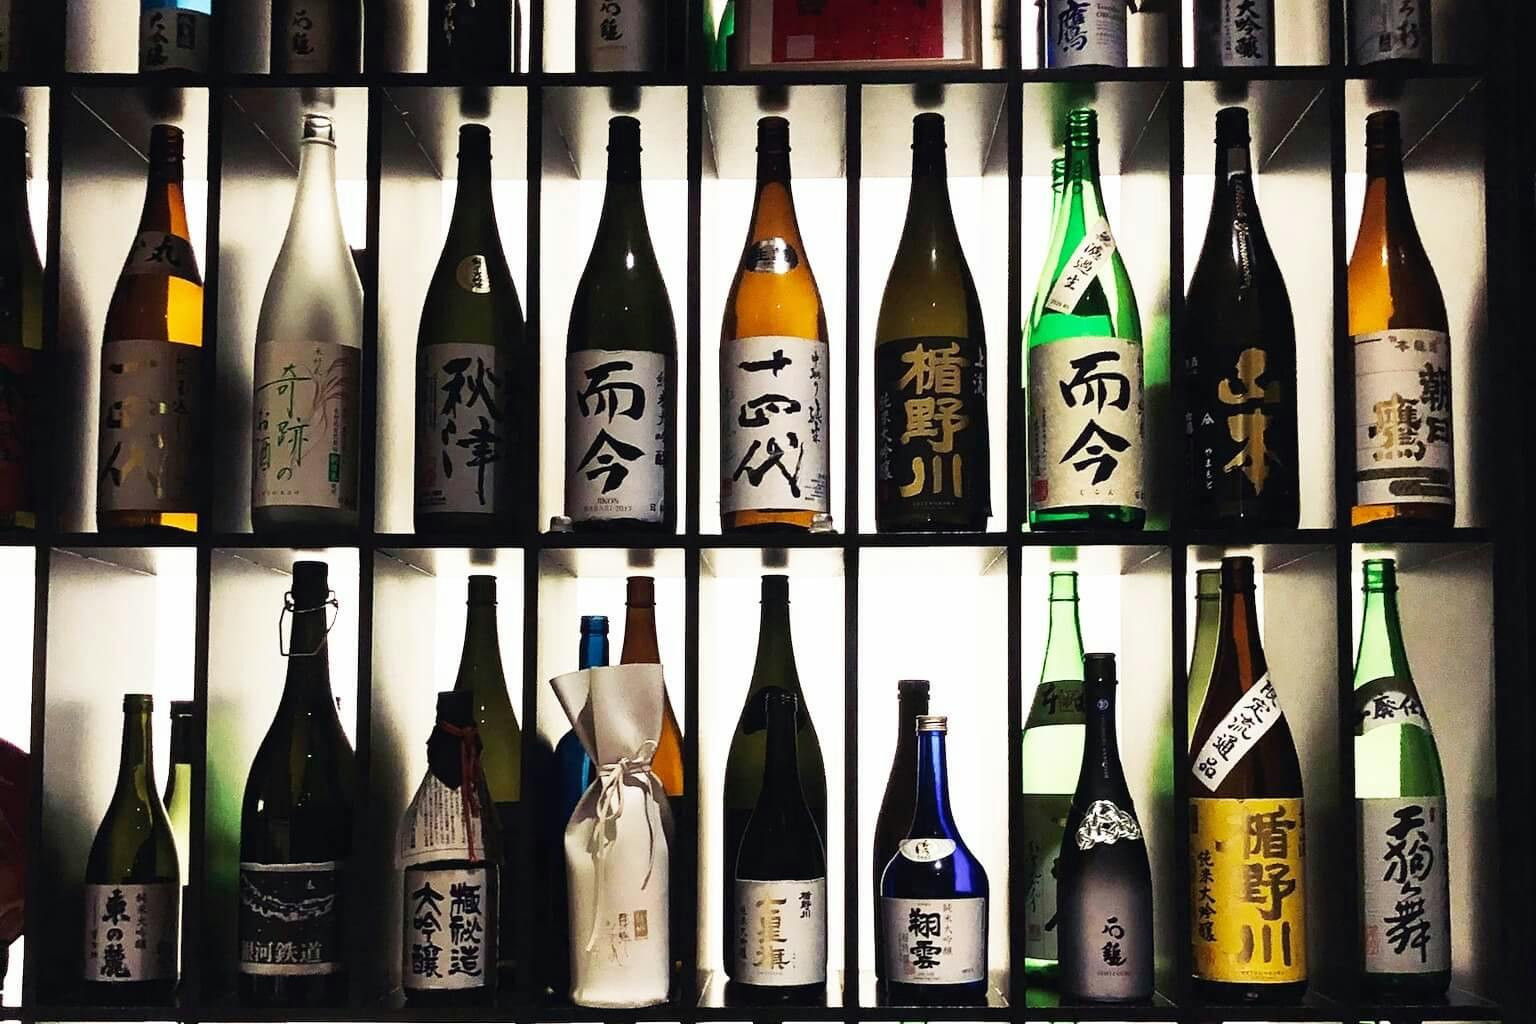 Various Japanese sake inside the shelves